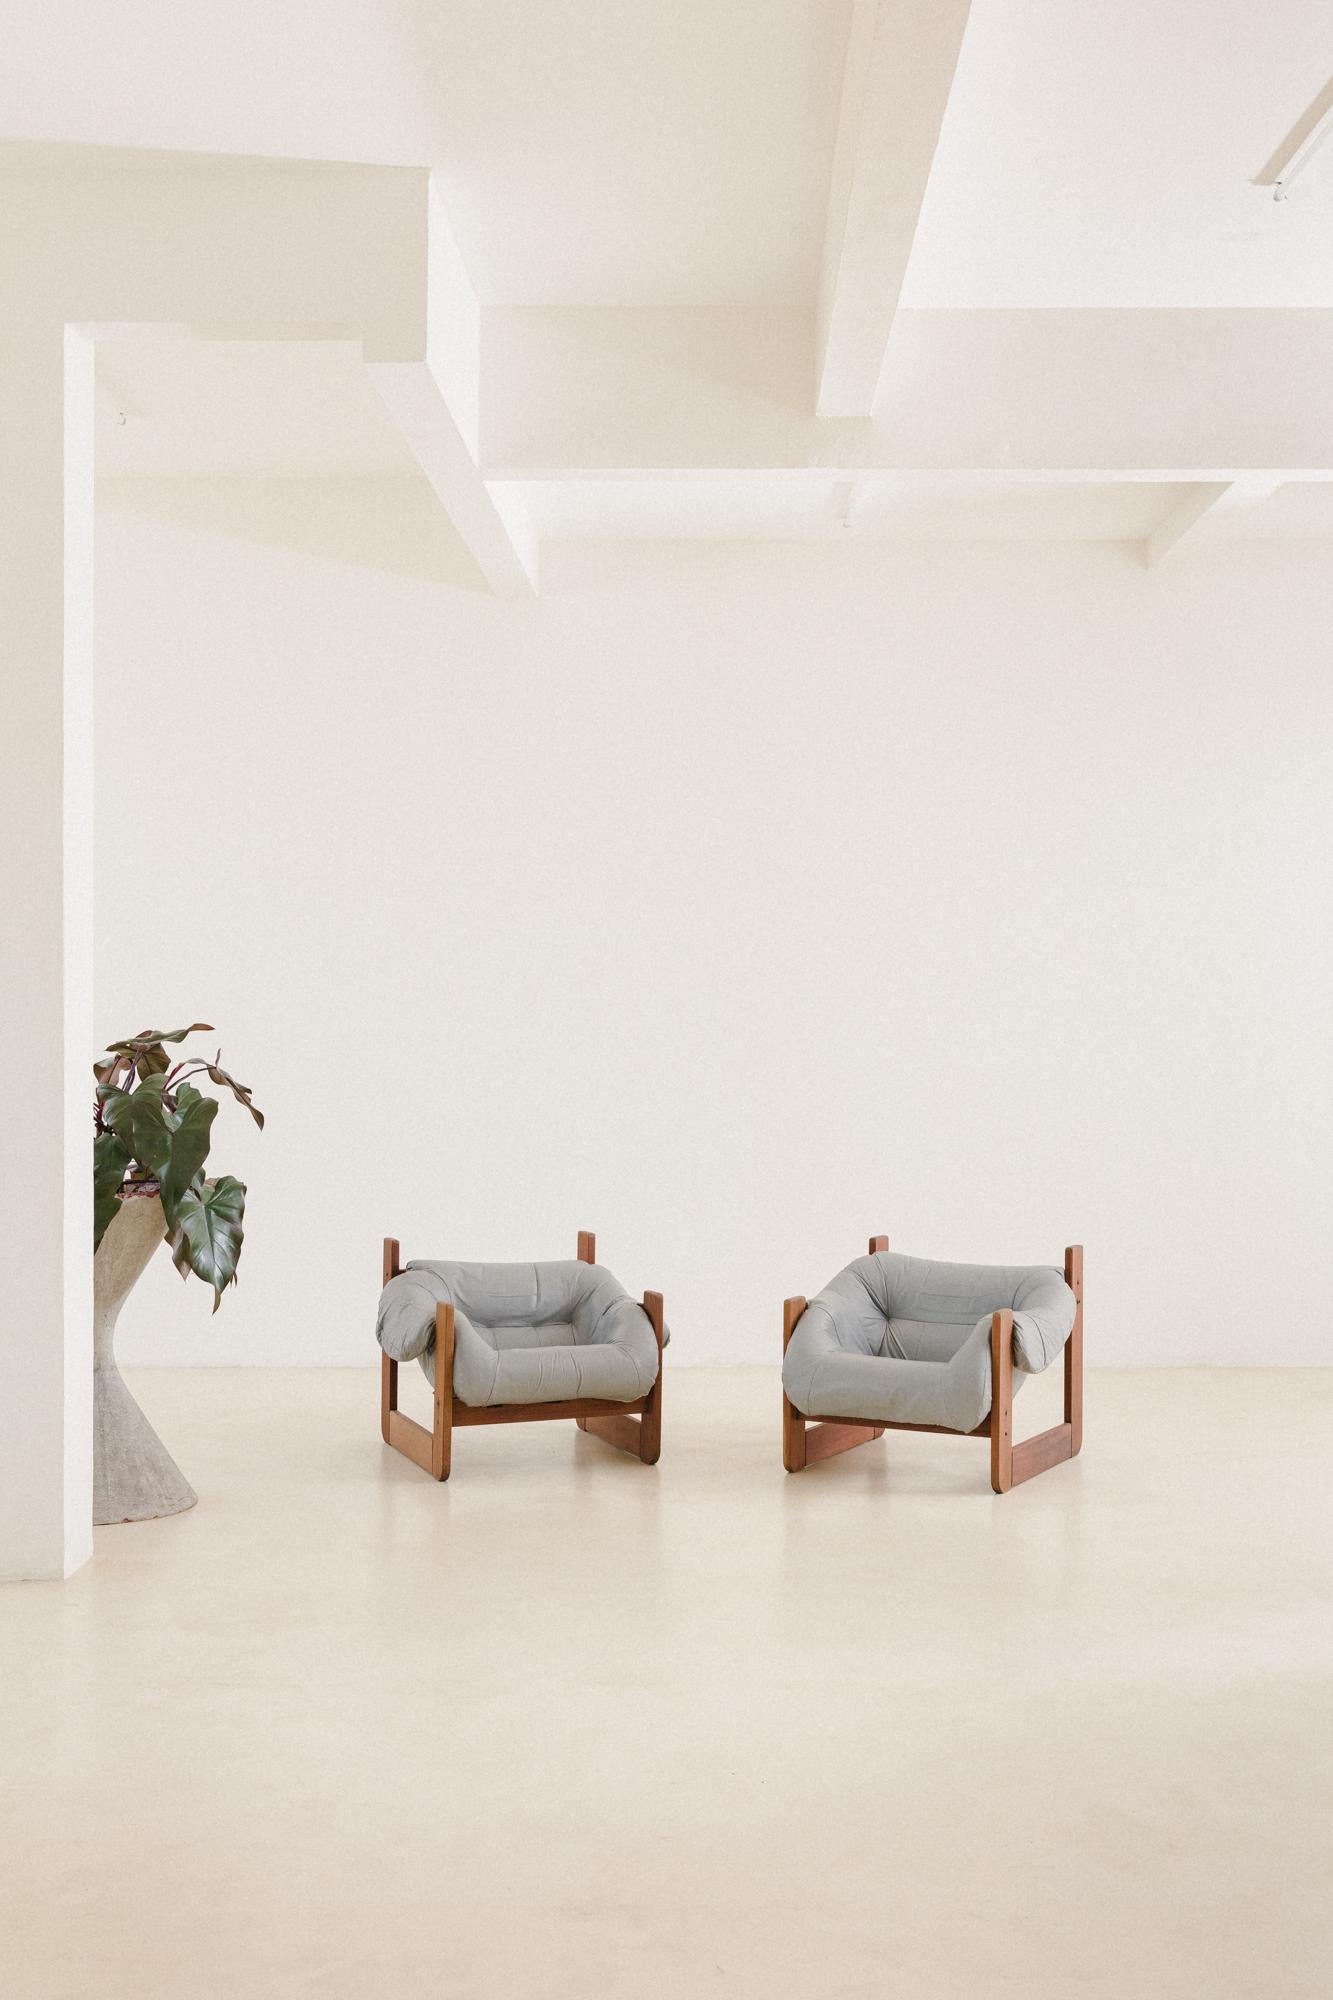 Bei seinen Entwürfen setzte Percival Lafer auf Ergonomie und Komfort. Das Paar MP-97 Lounge Chairs von Percival Lafer besteht aus einer Massivholzstruktur mit einer Sitzfläche aus losem Schaumstoff in einem Stück. Sein einzigartiges Design und seine